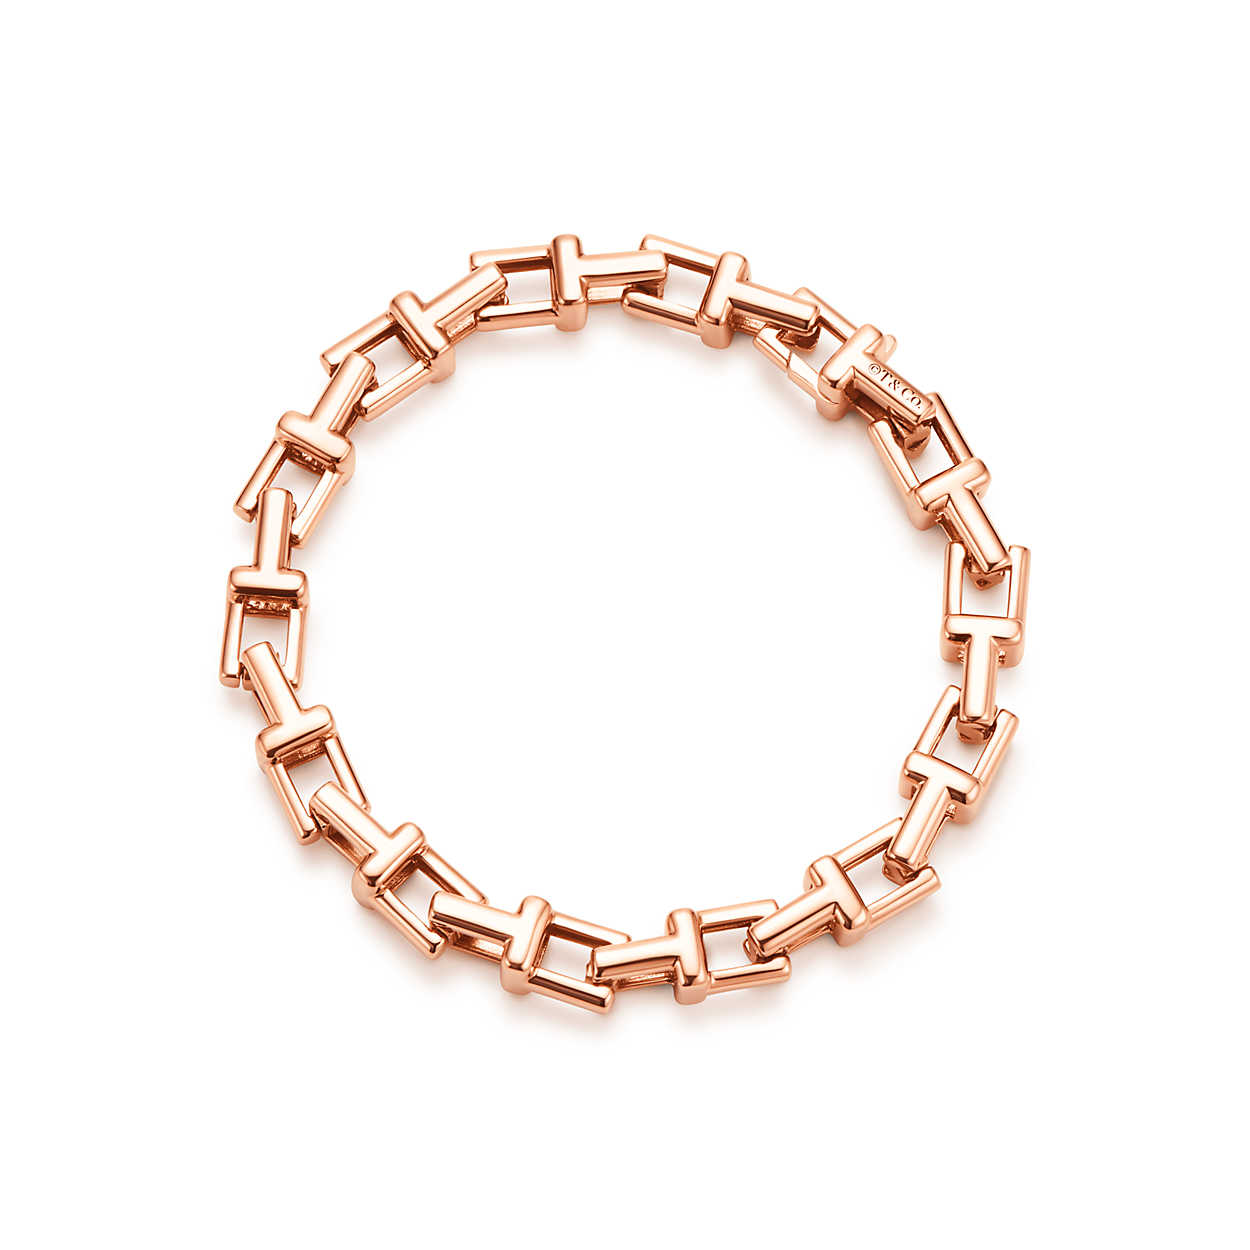 Best gold chain bracelet etsy for women